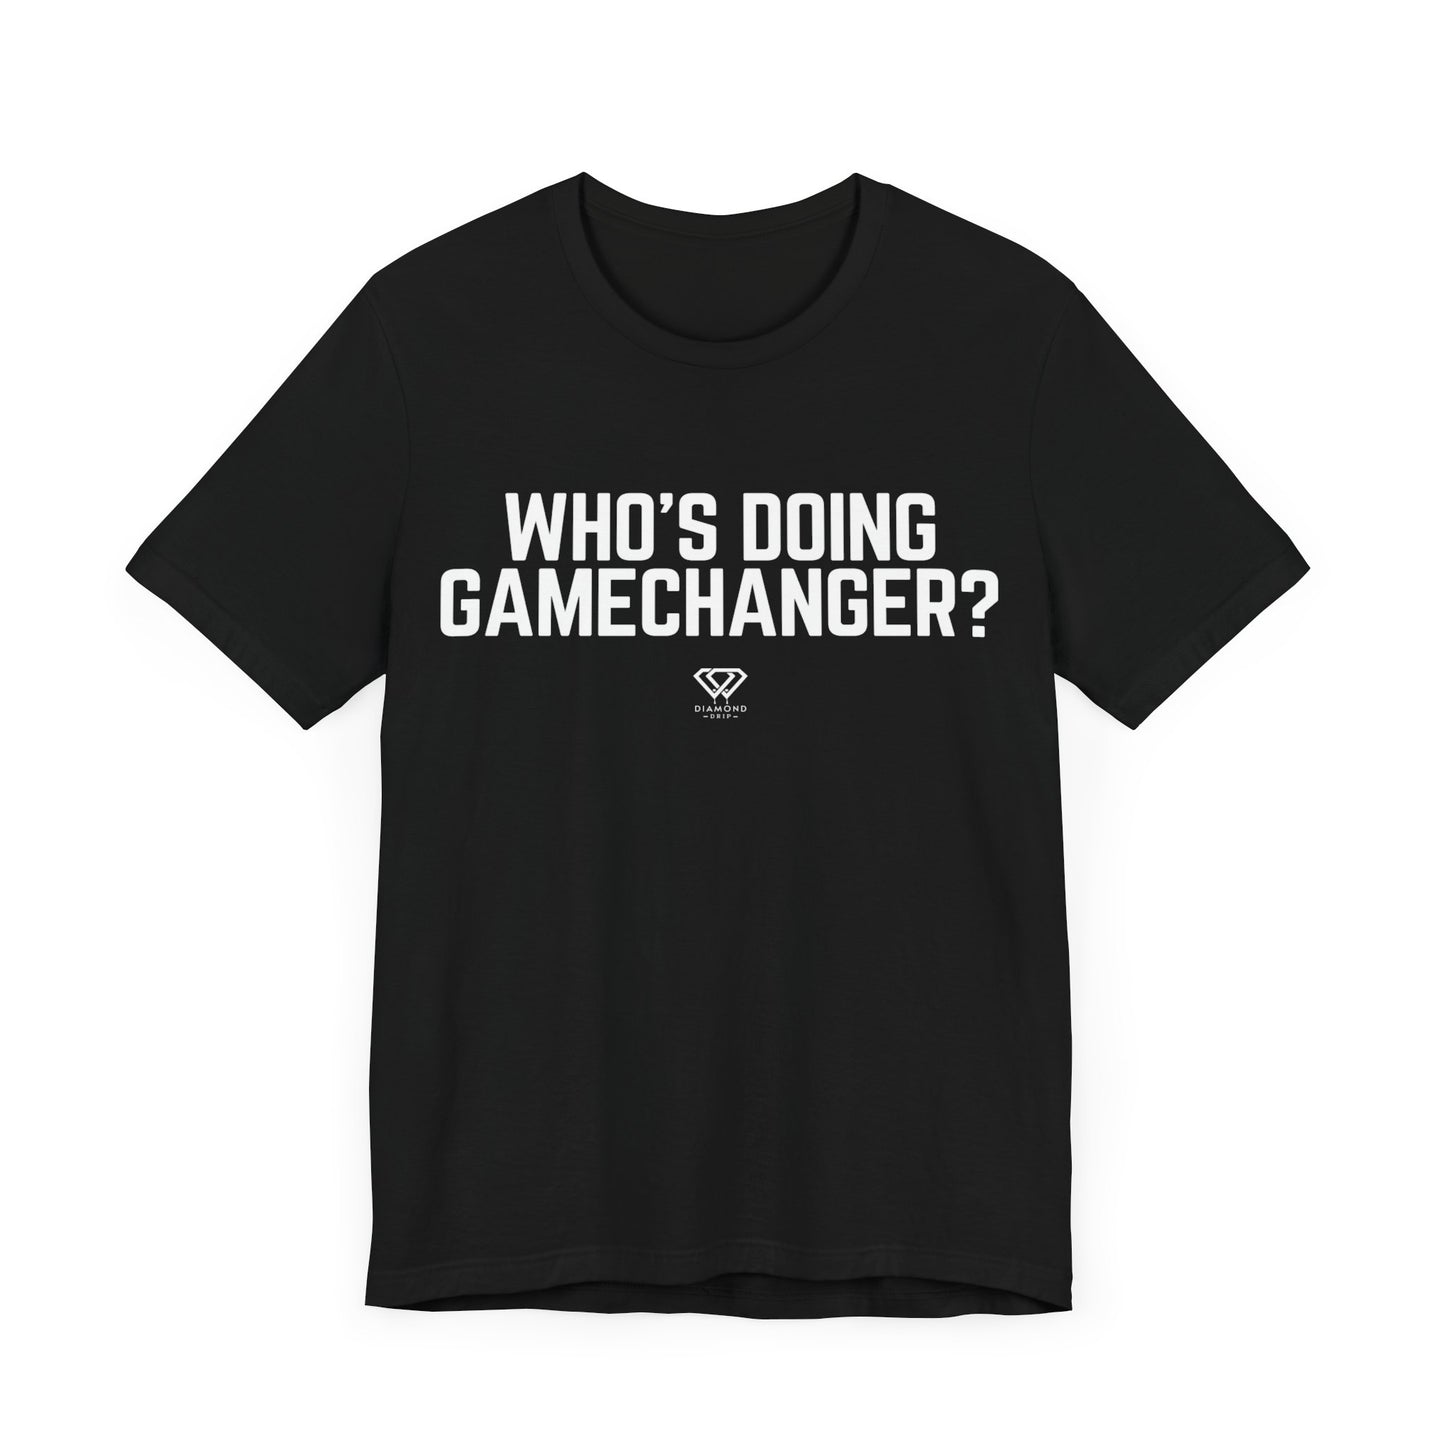 Who's Doing Gamechanger?